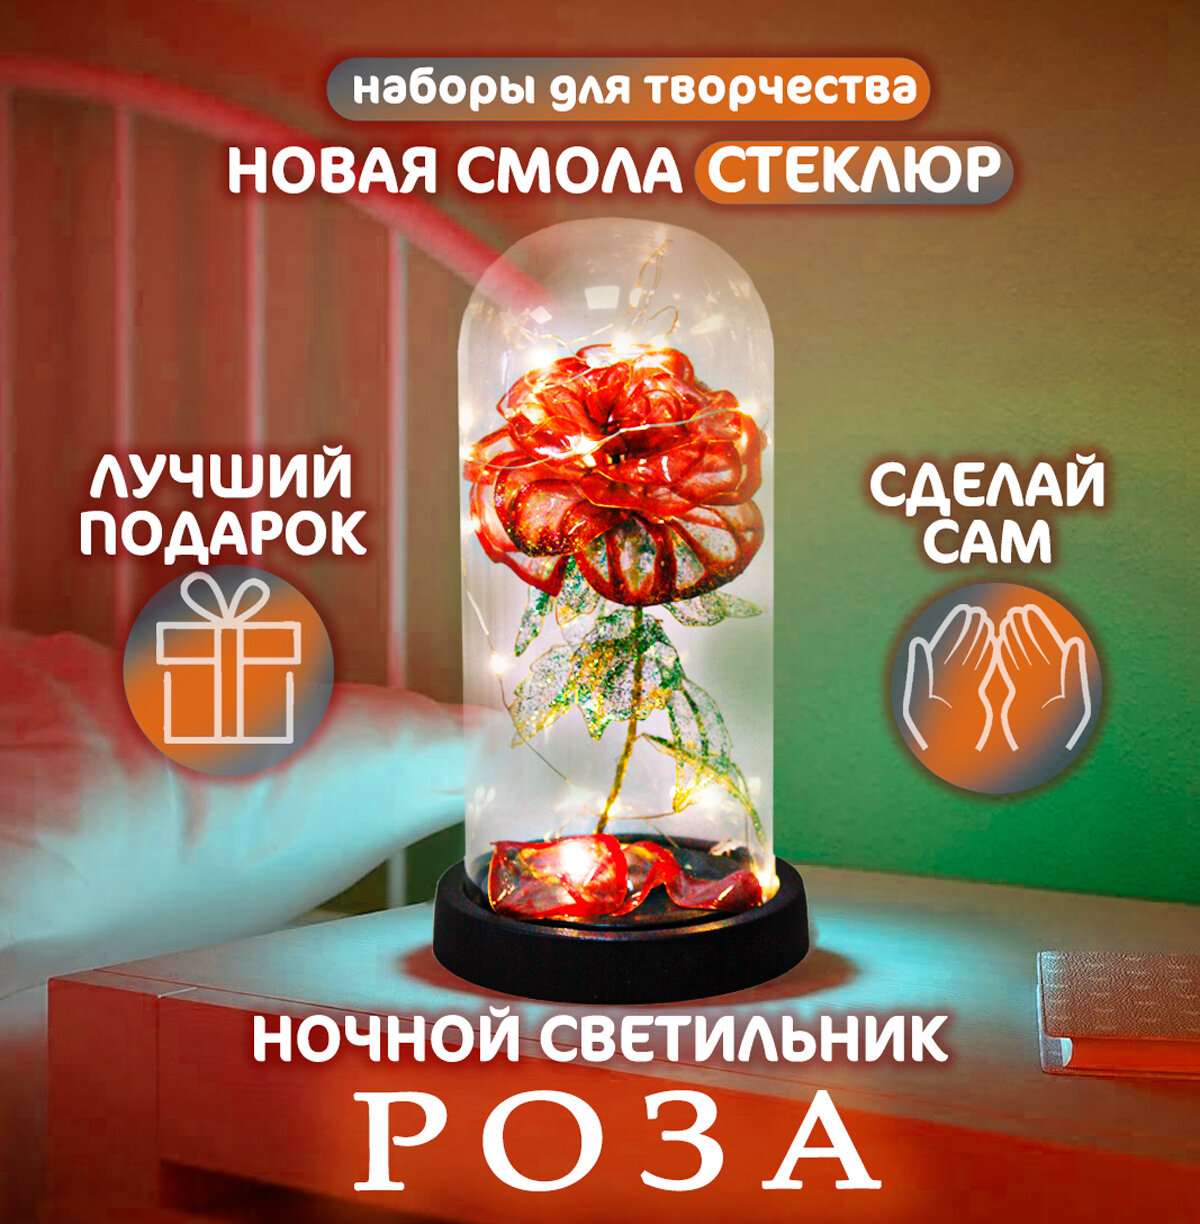 Набор для творчества "Роза в колбе", декоративный светильник из инновационной смолы Стеклюр